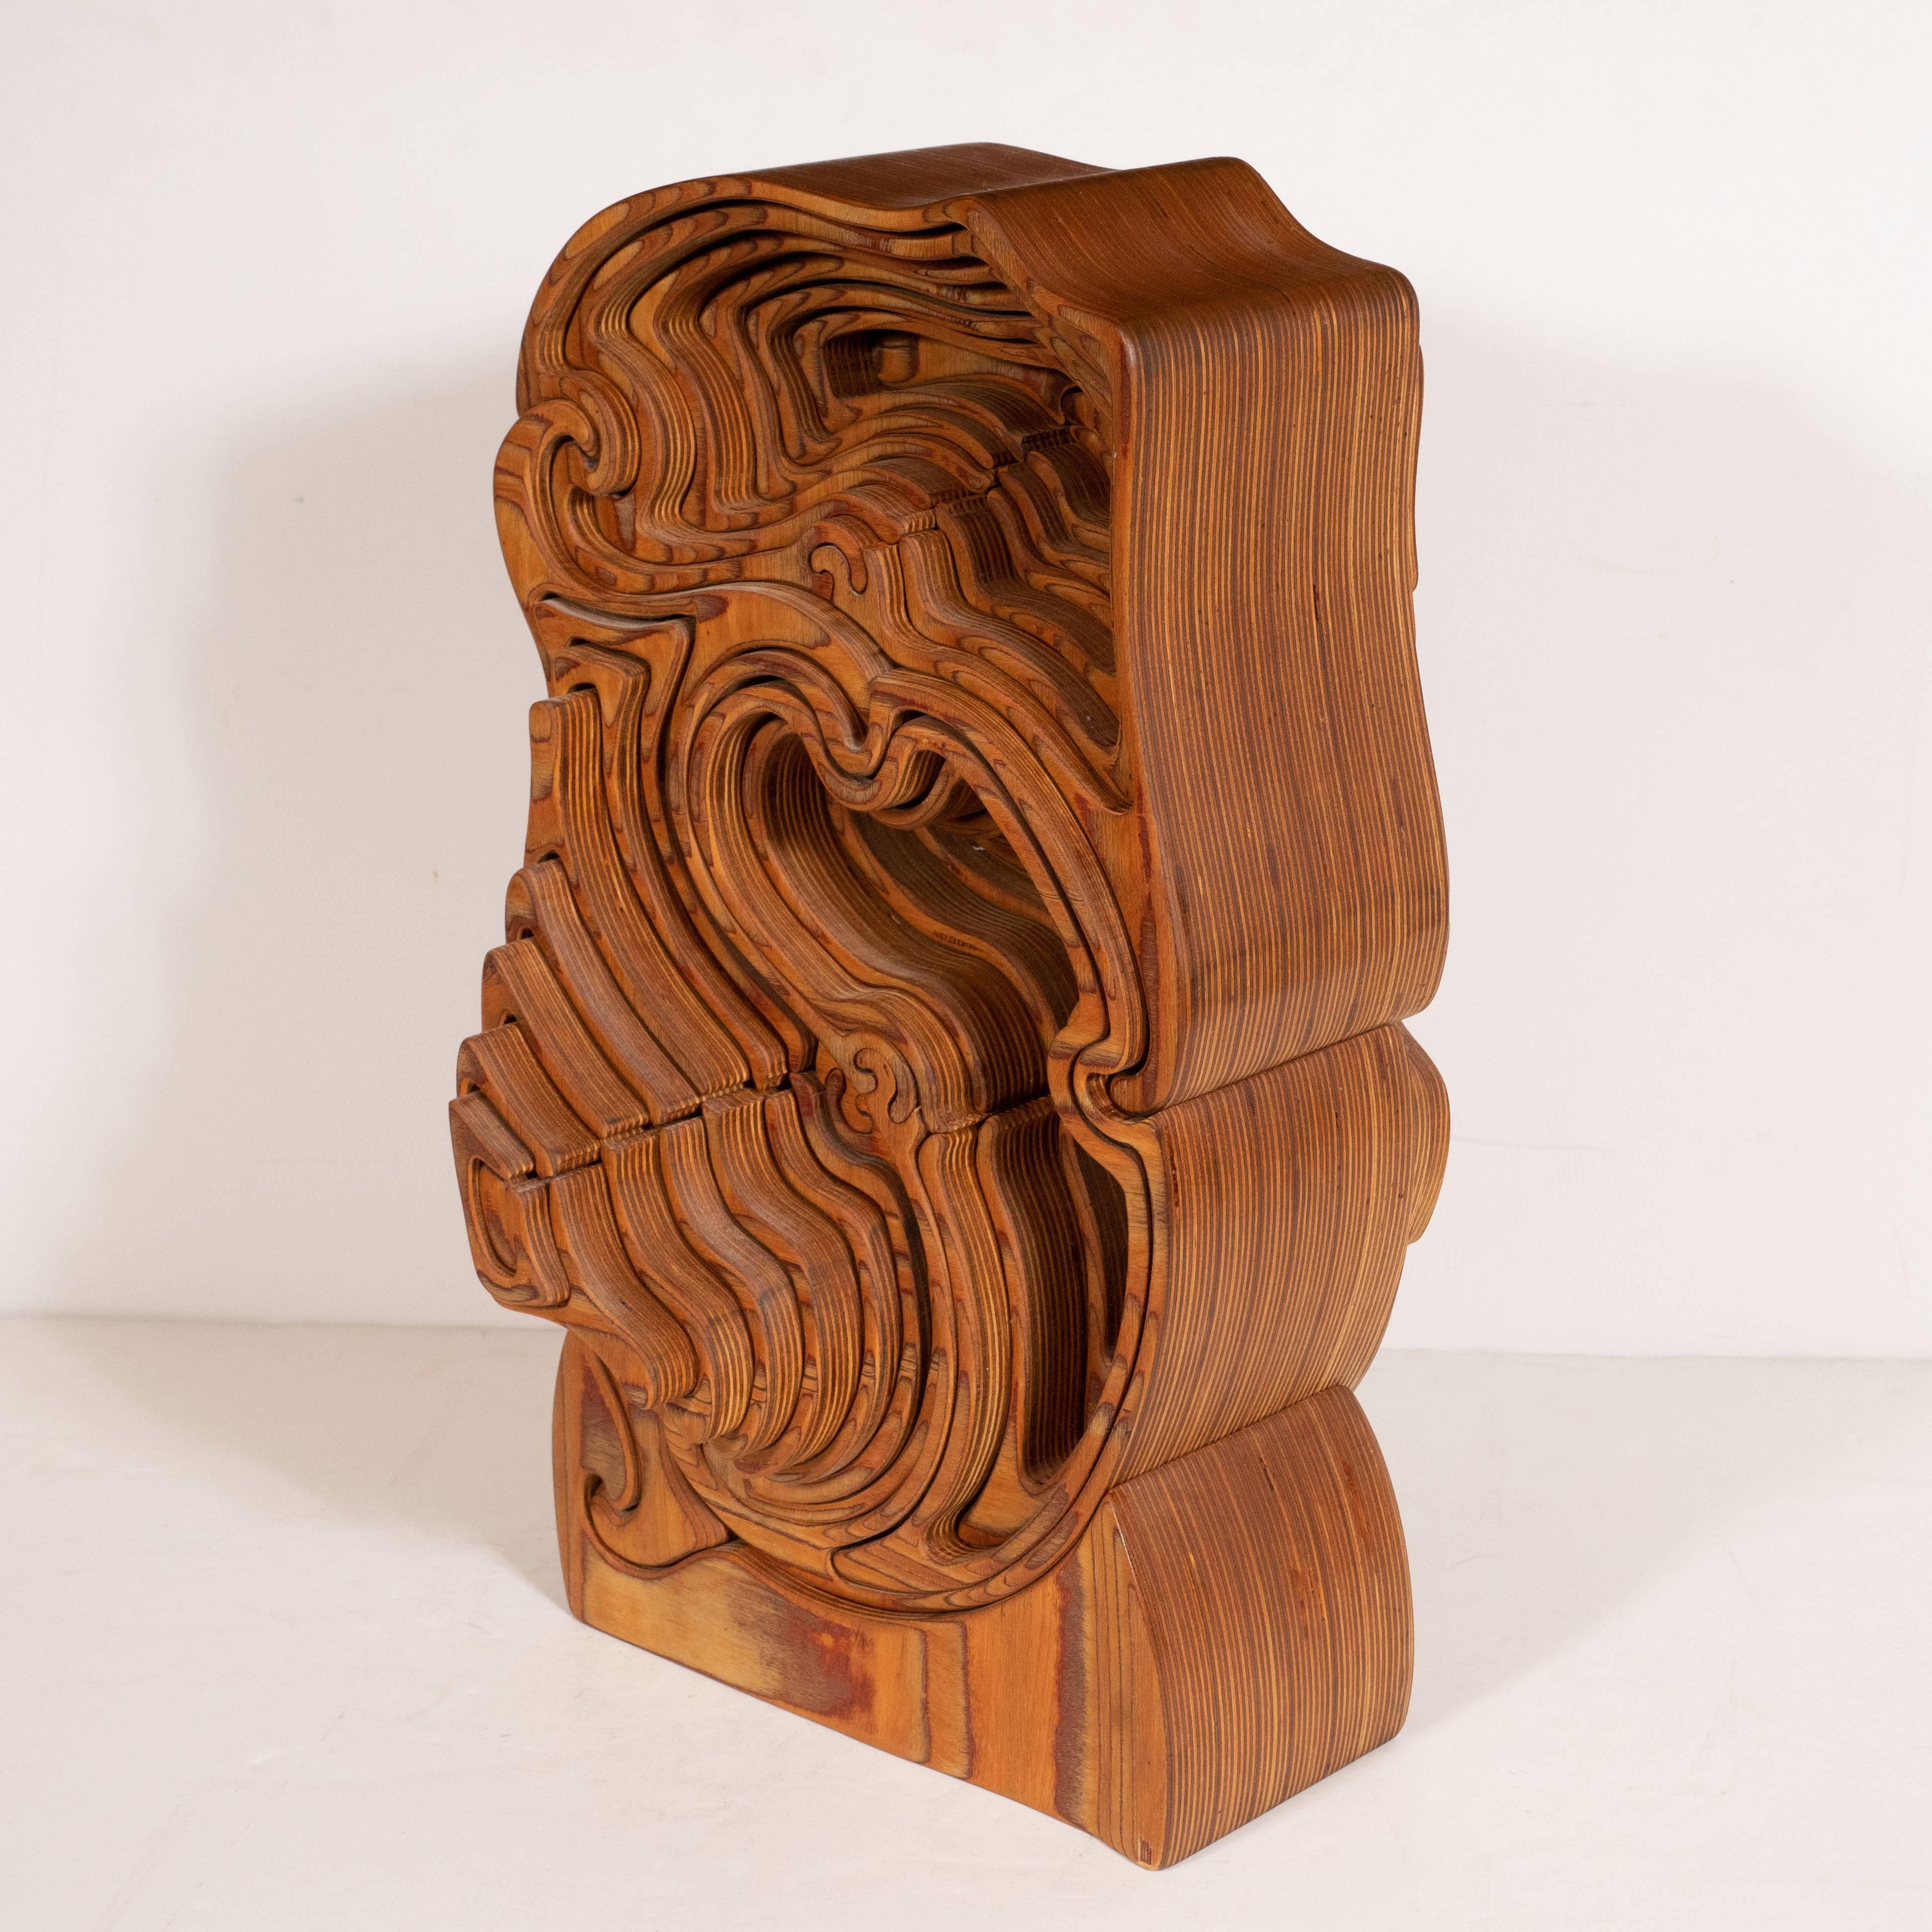 olive wood sculpture